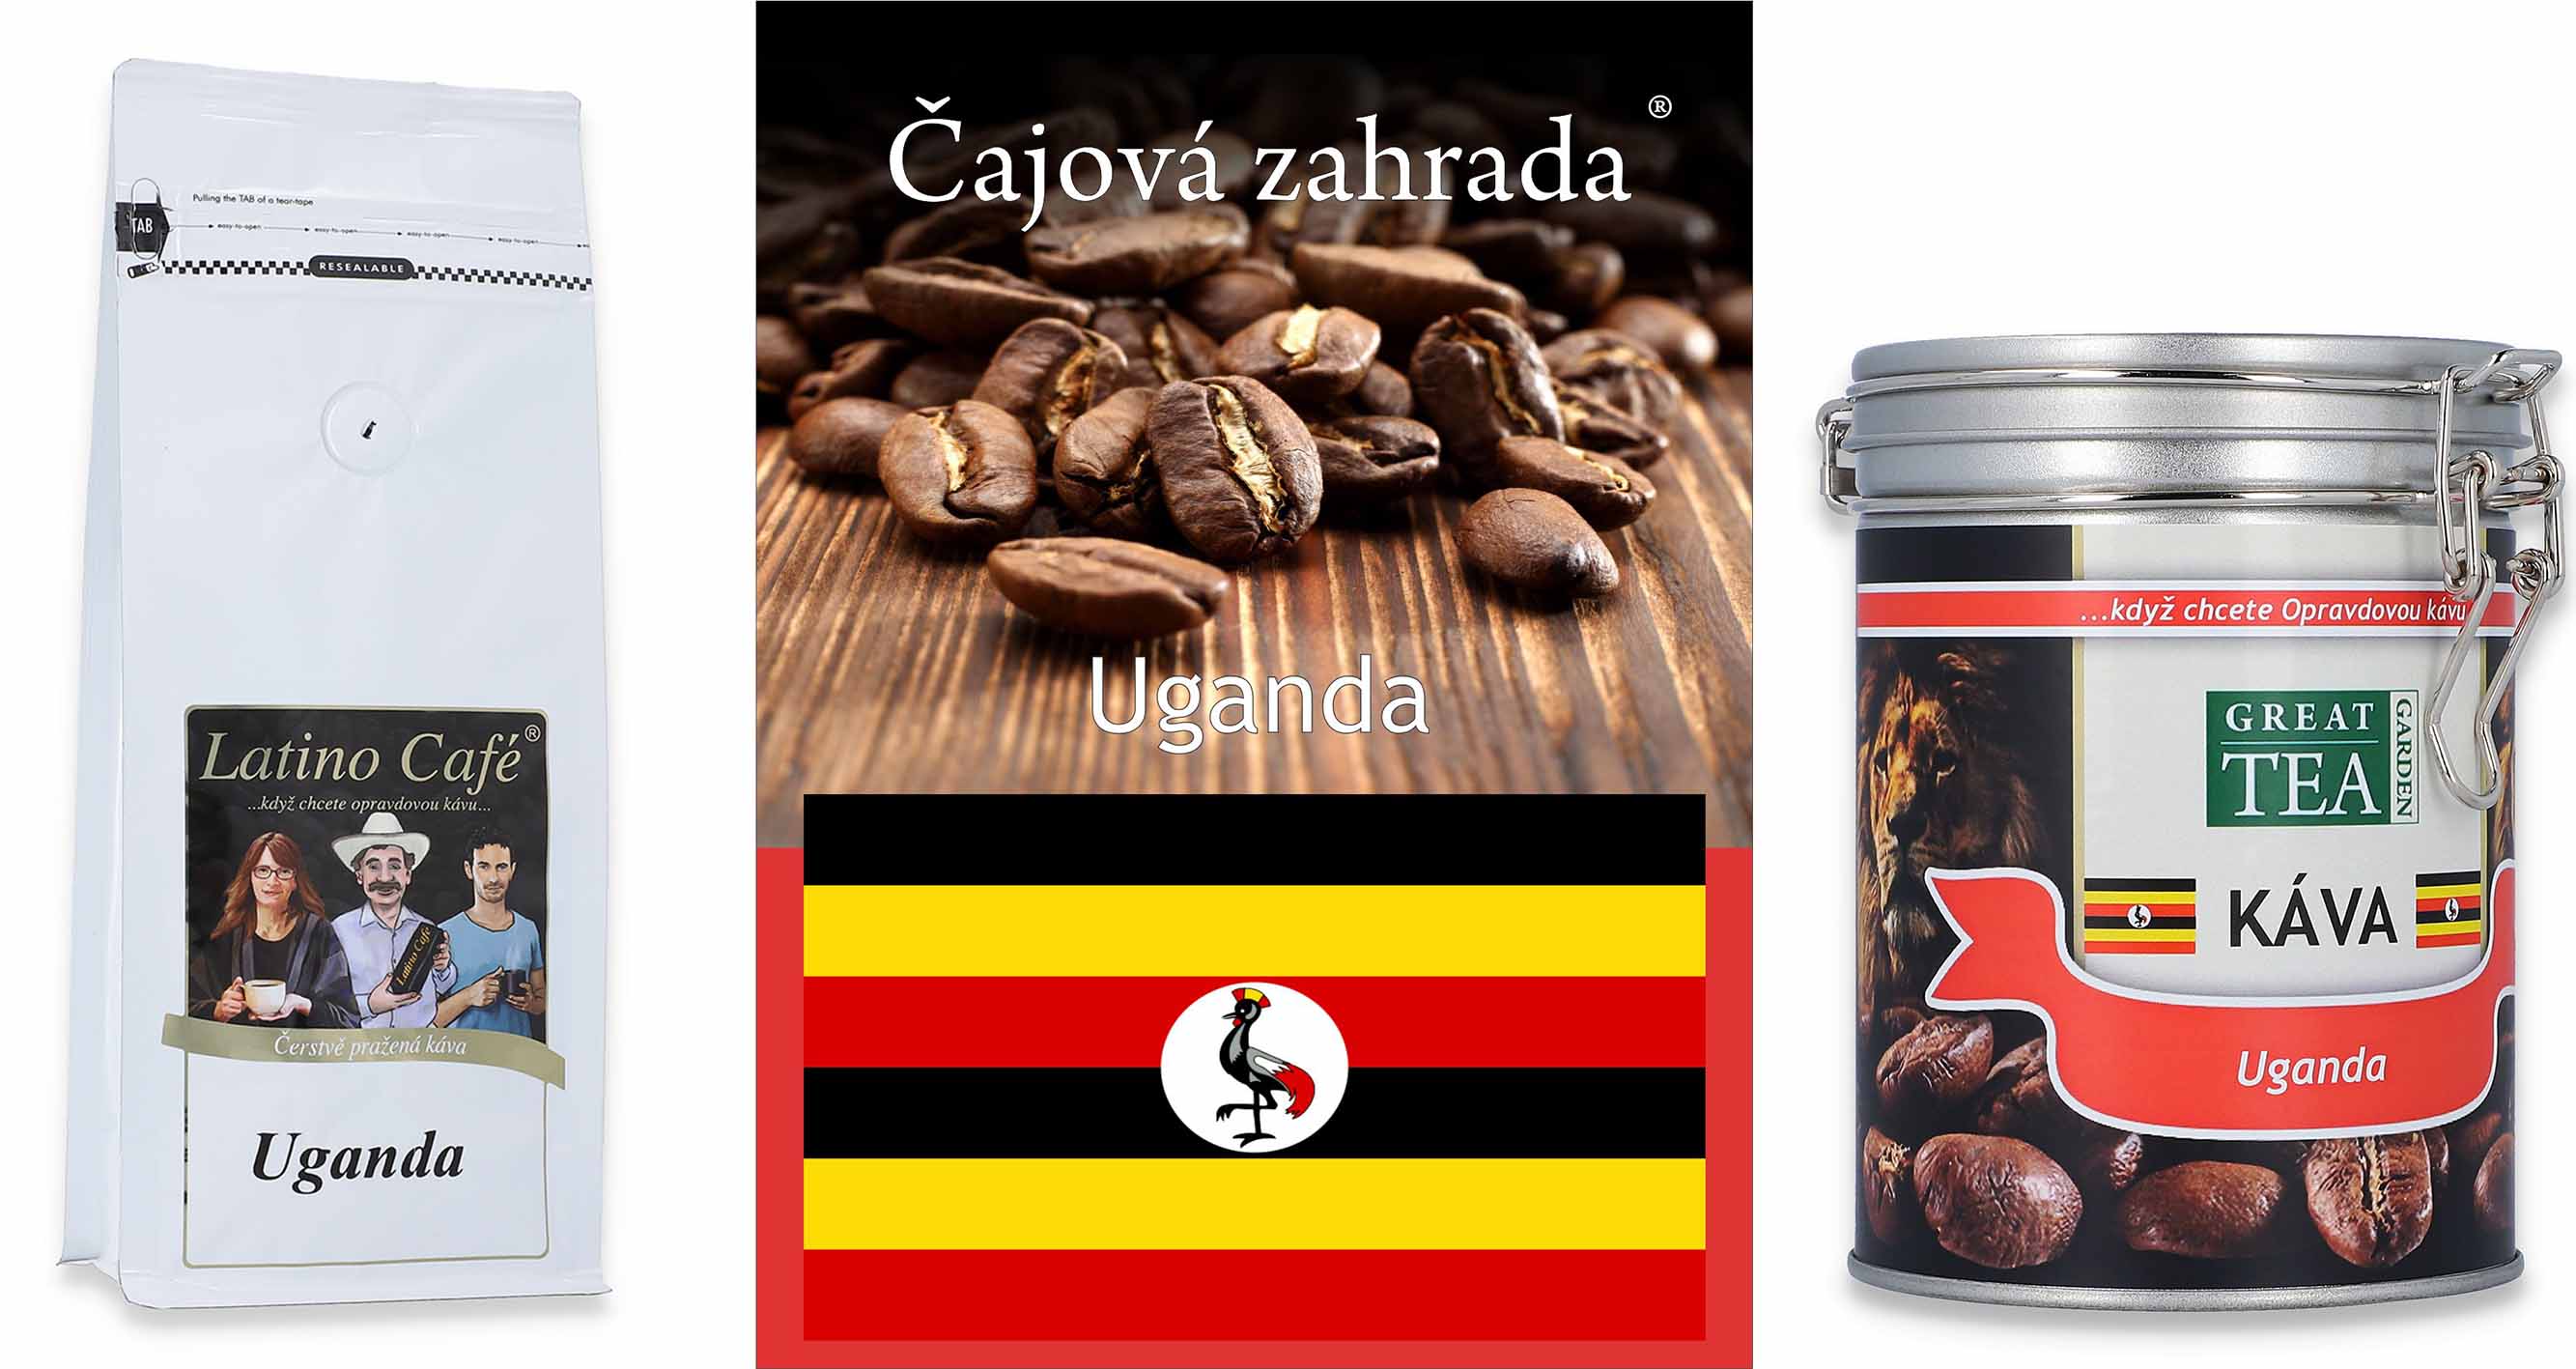 Uganda - Vyvážená káva s nádechem hořké čokolády